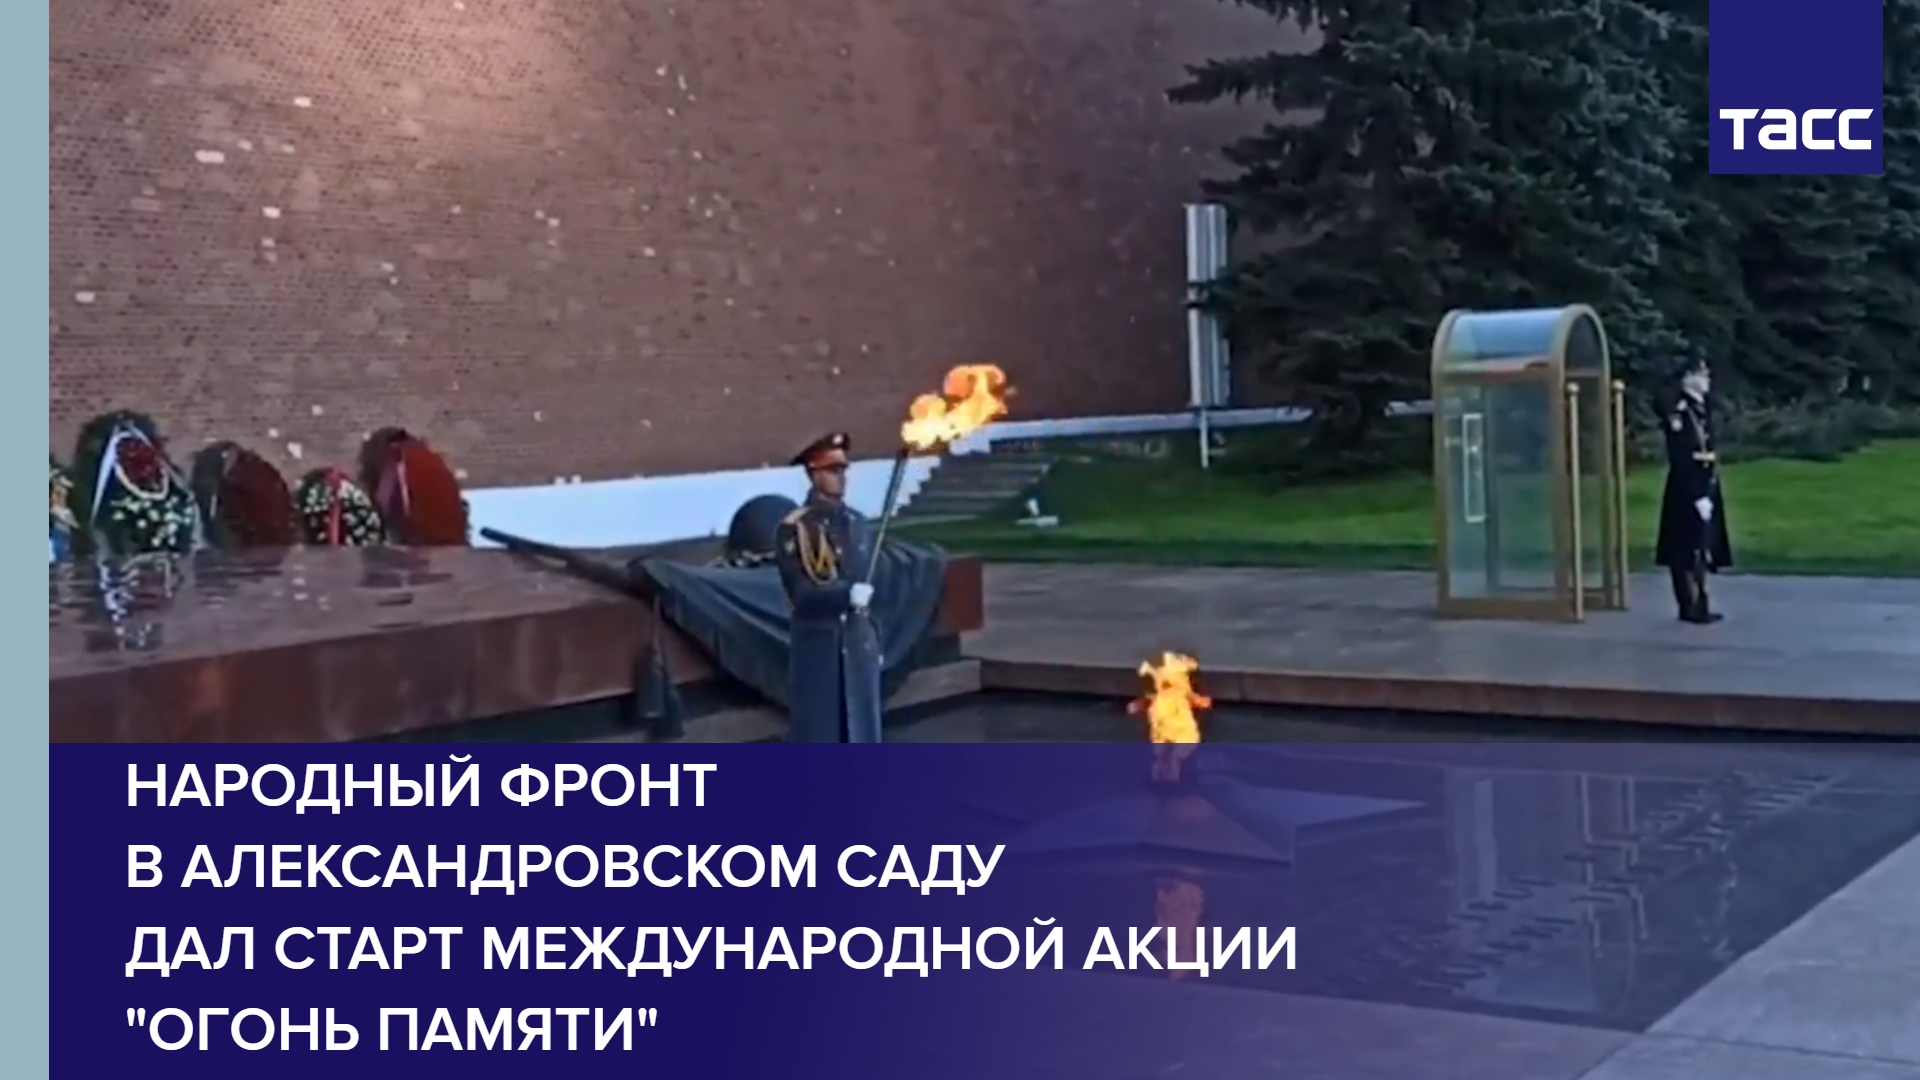 Народный фронт в Александровском саду дал старт международной акции "Огонь памяти"